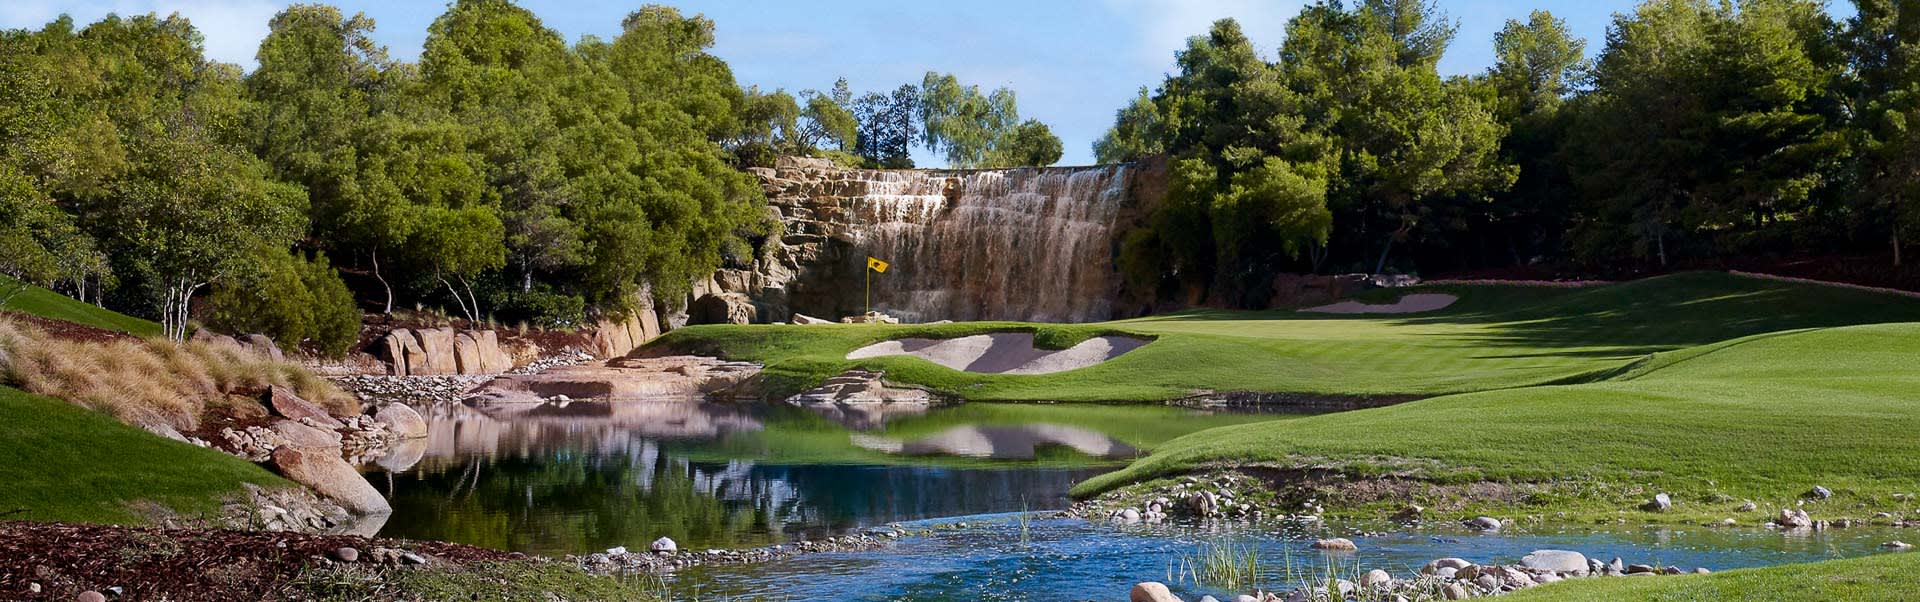 Wynn Golf Club Las Vegas Course, Wynn S Landscape Supply Llc